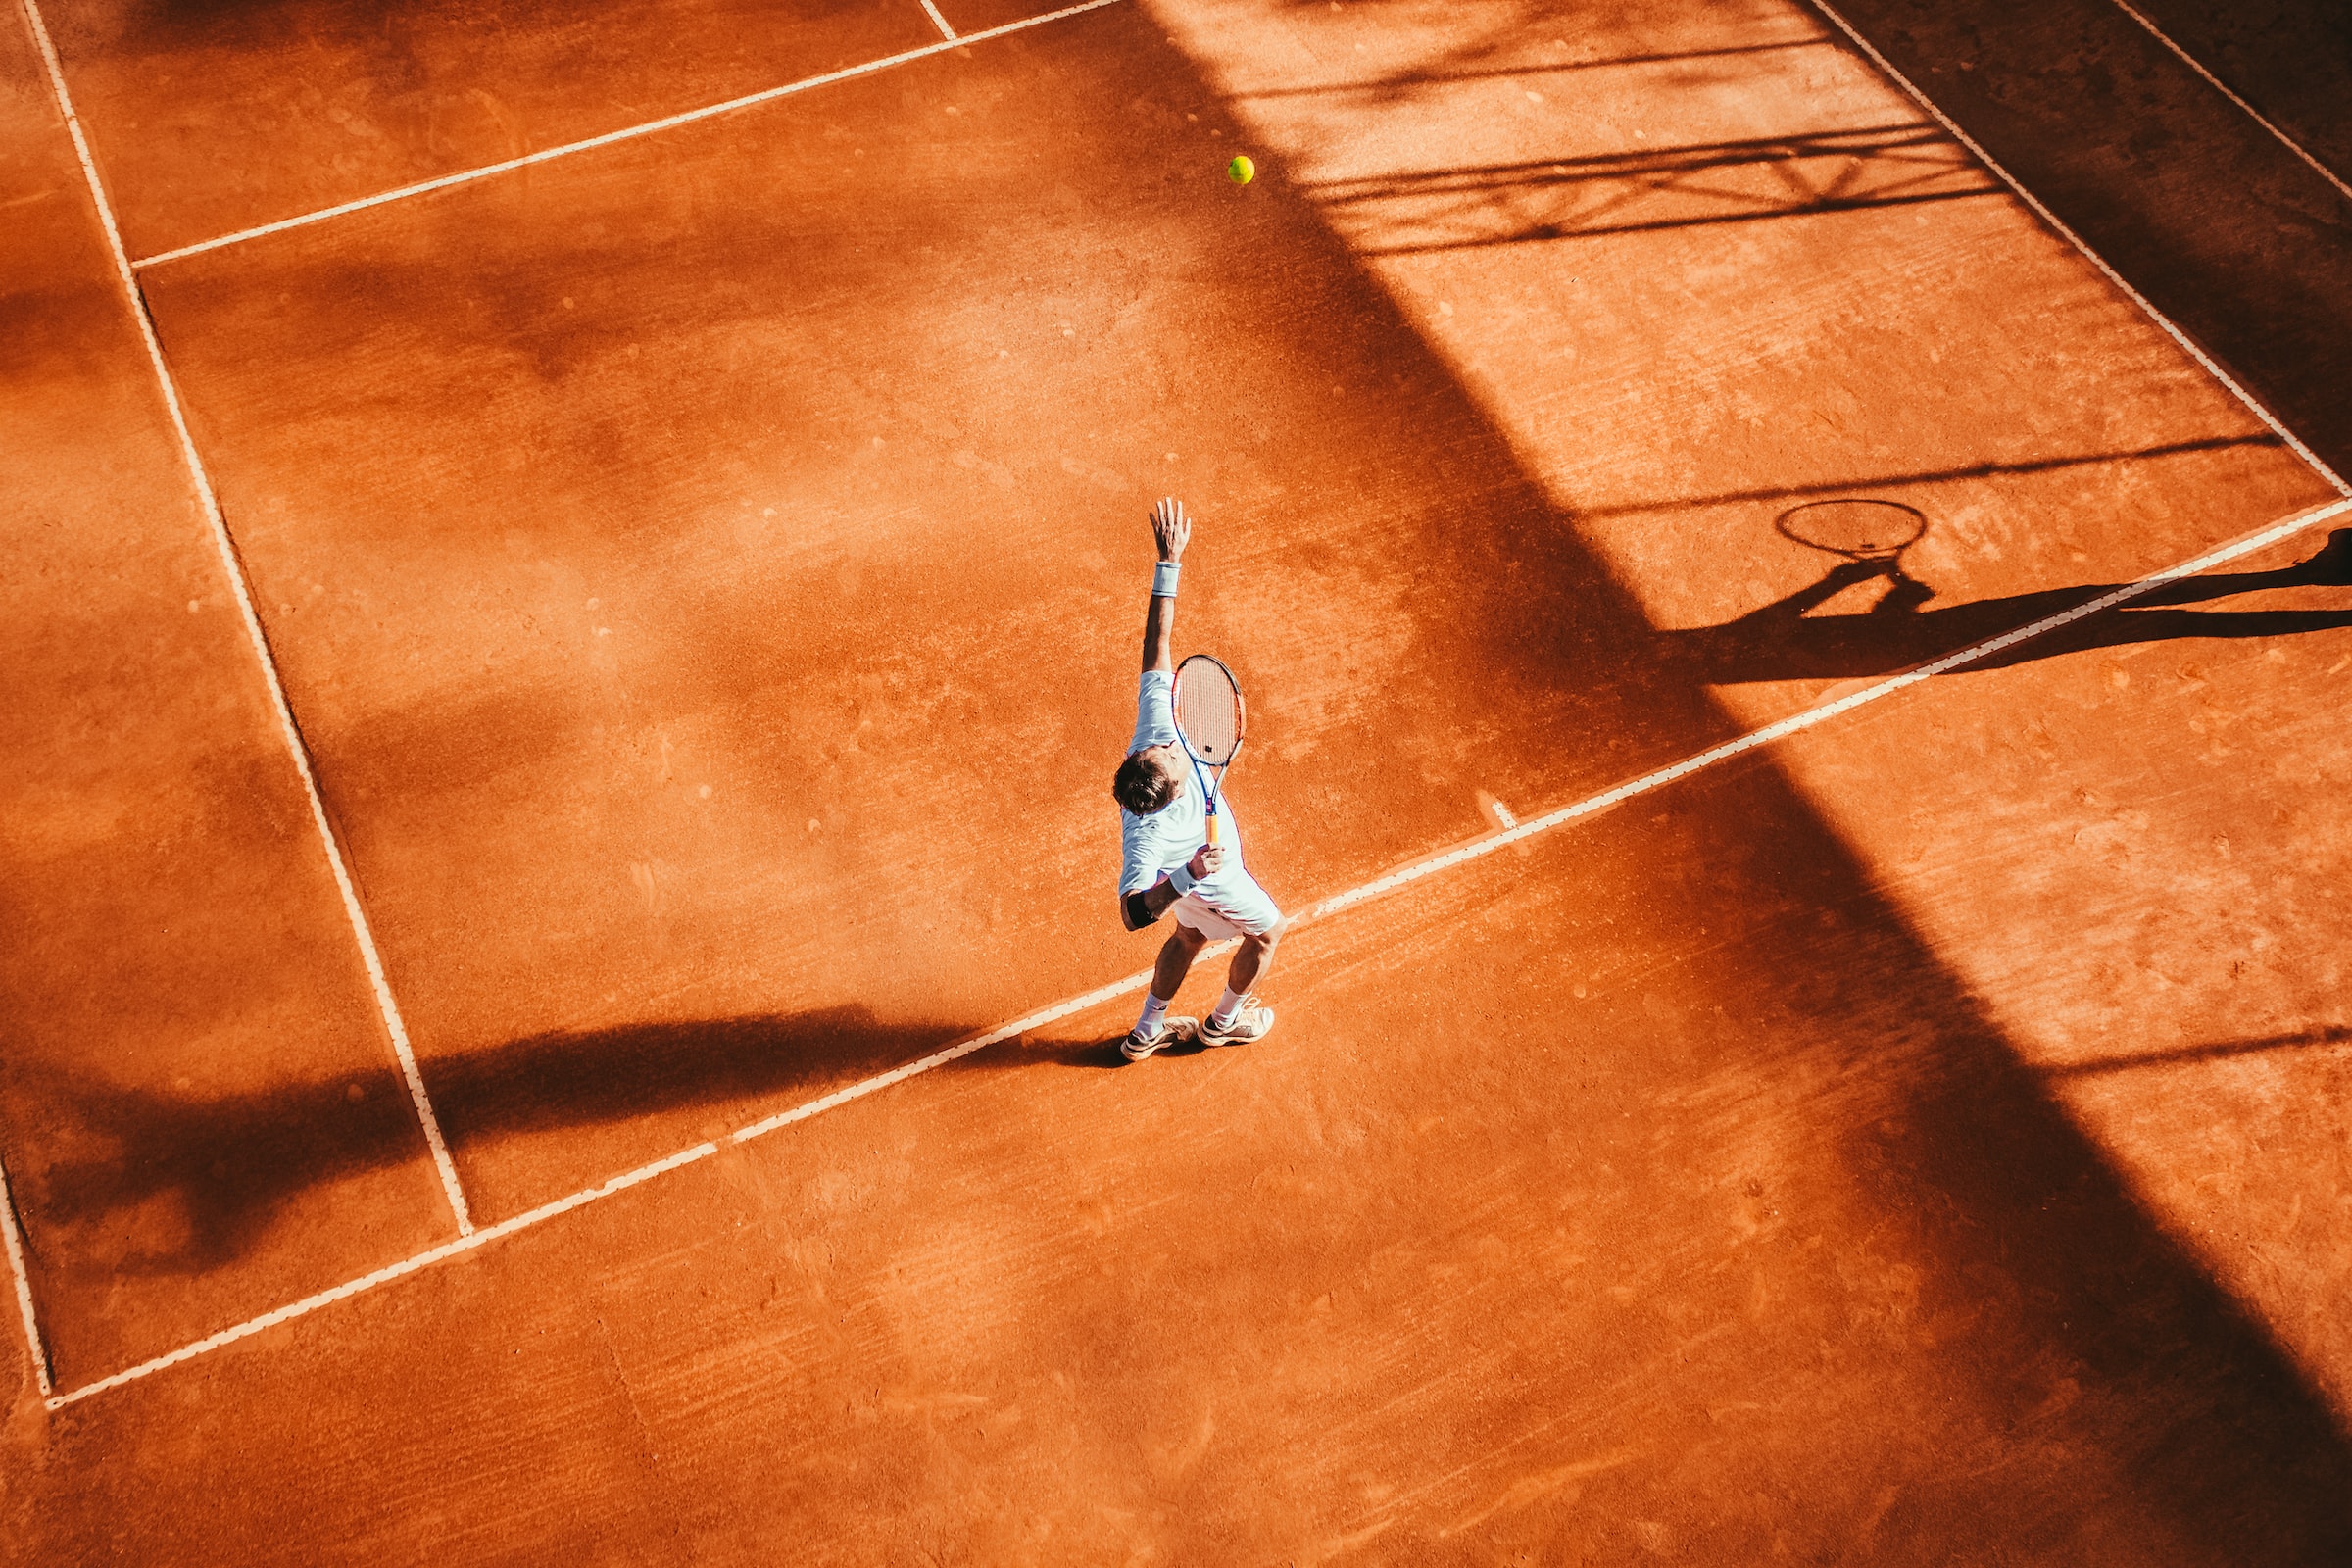 Man serving in a tennis match